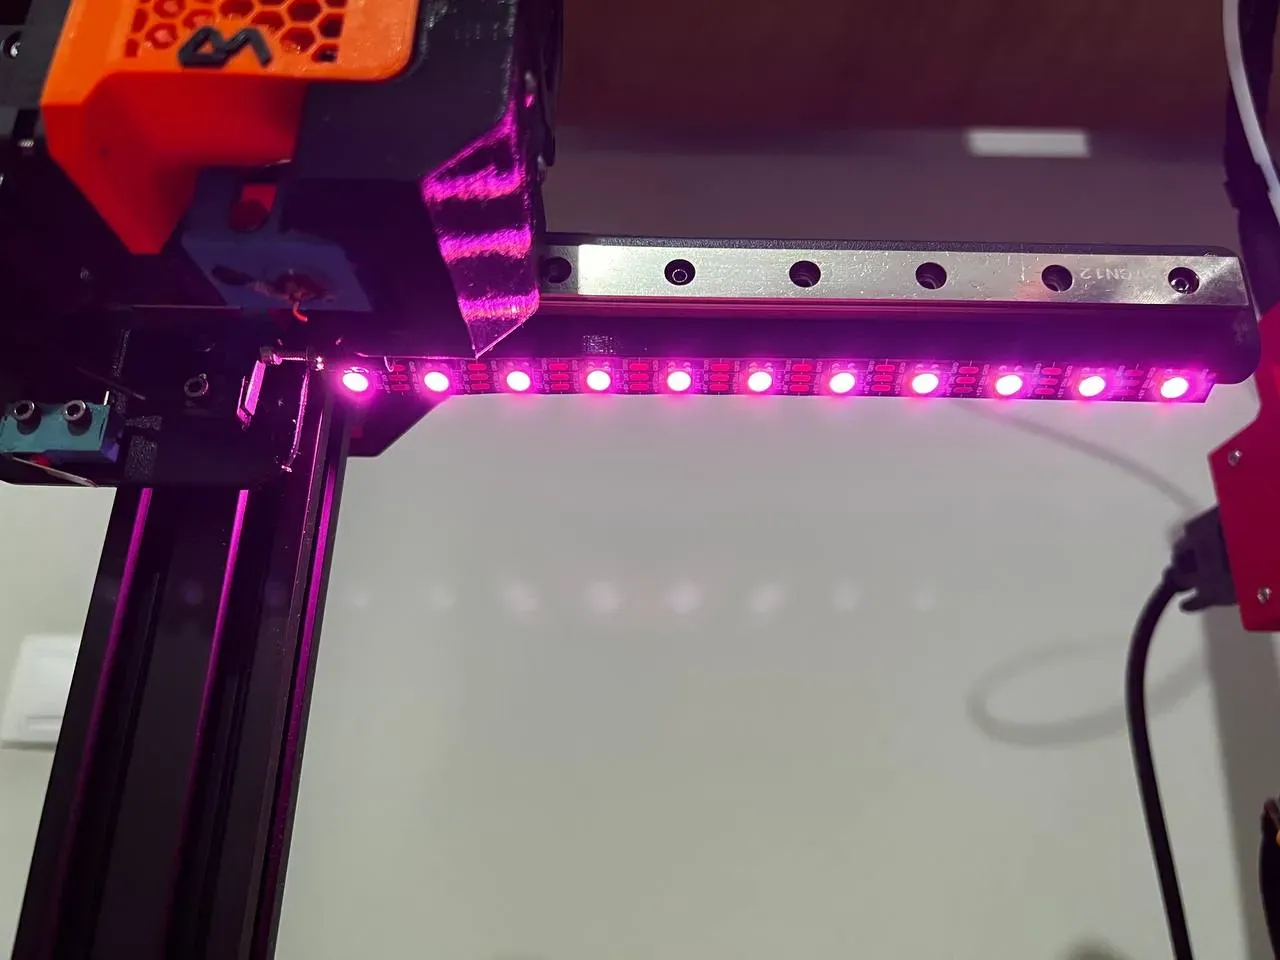 Universal LED Light Bar Upgrade Kit for 3D Printers — Kingroon 3D